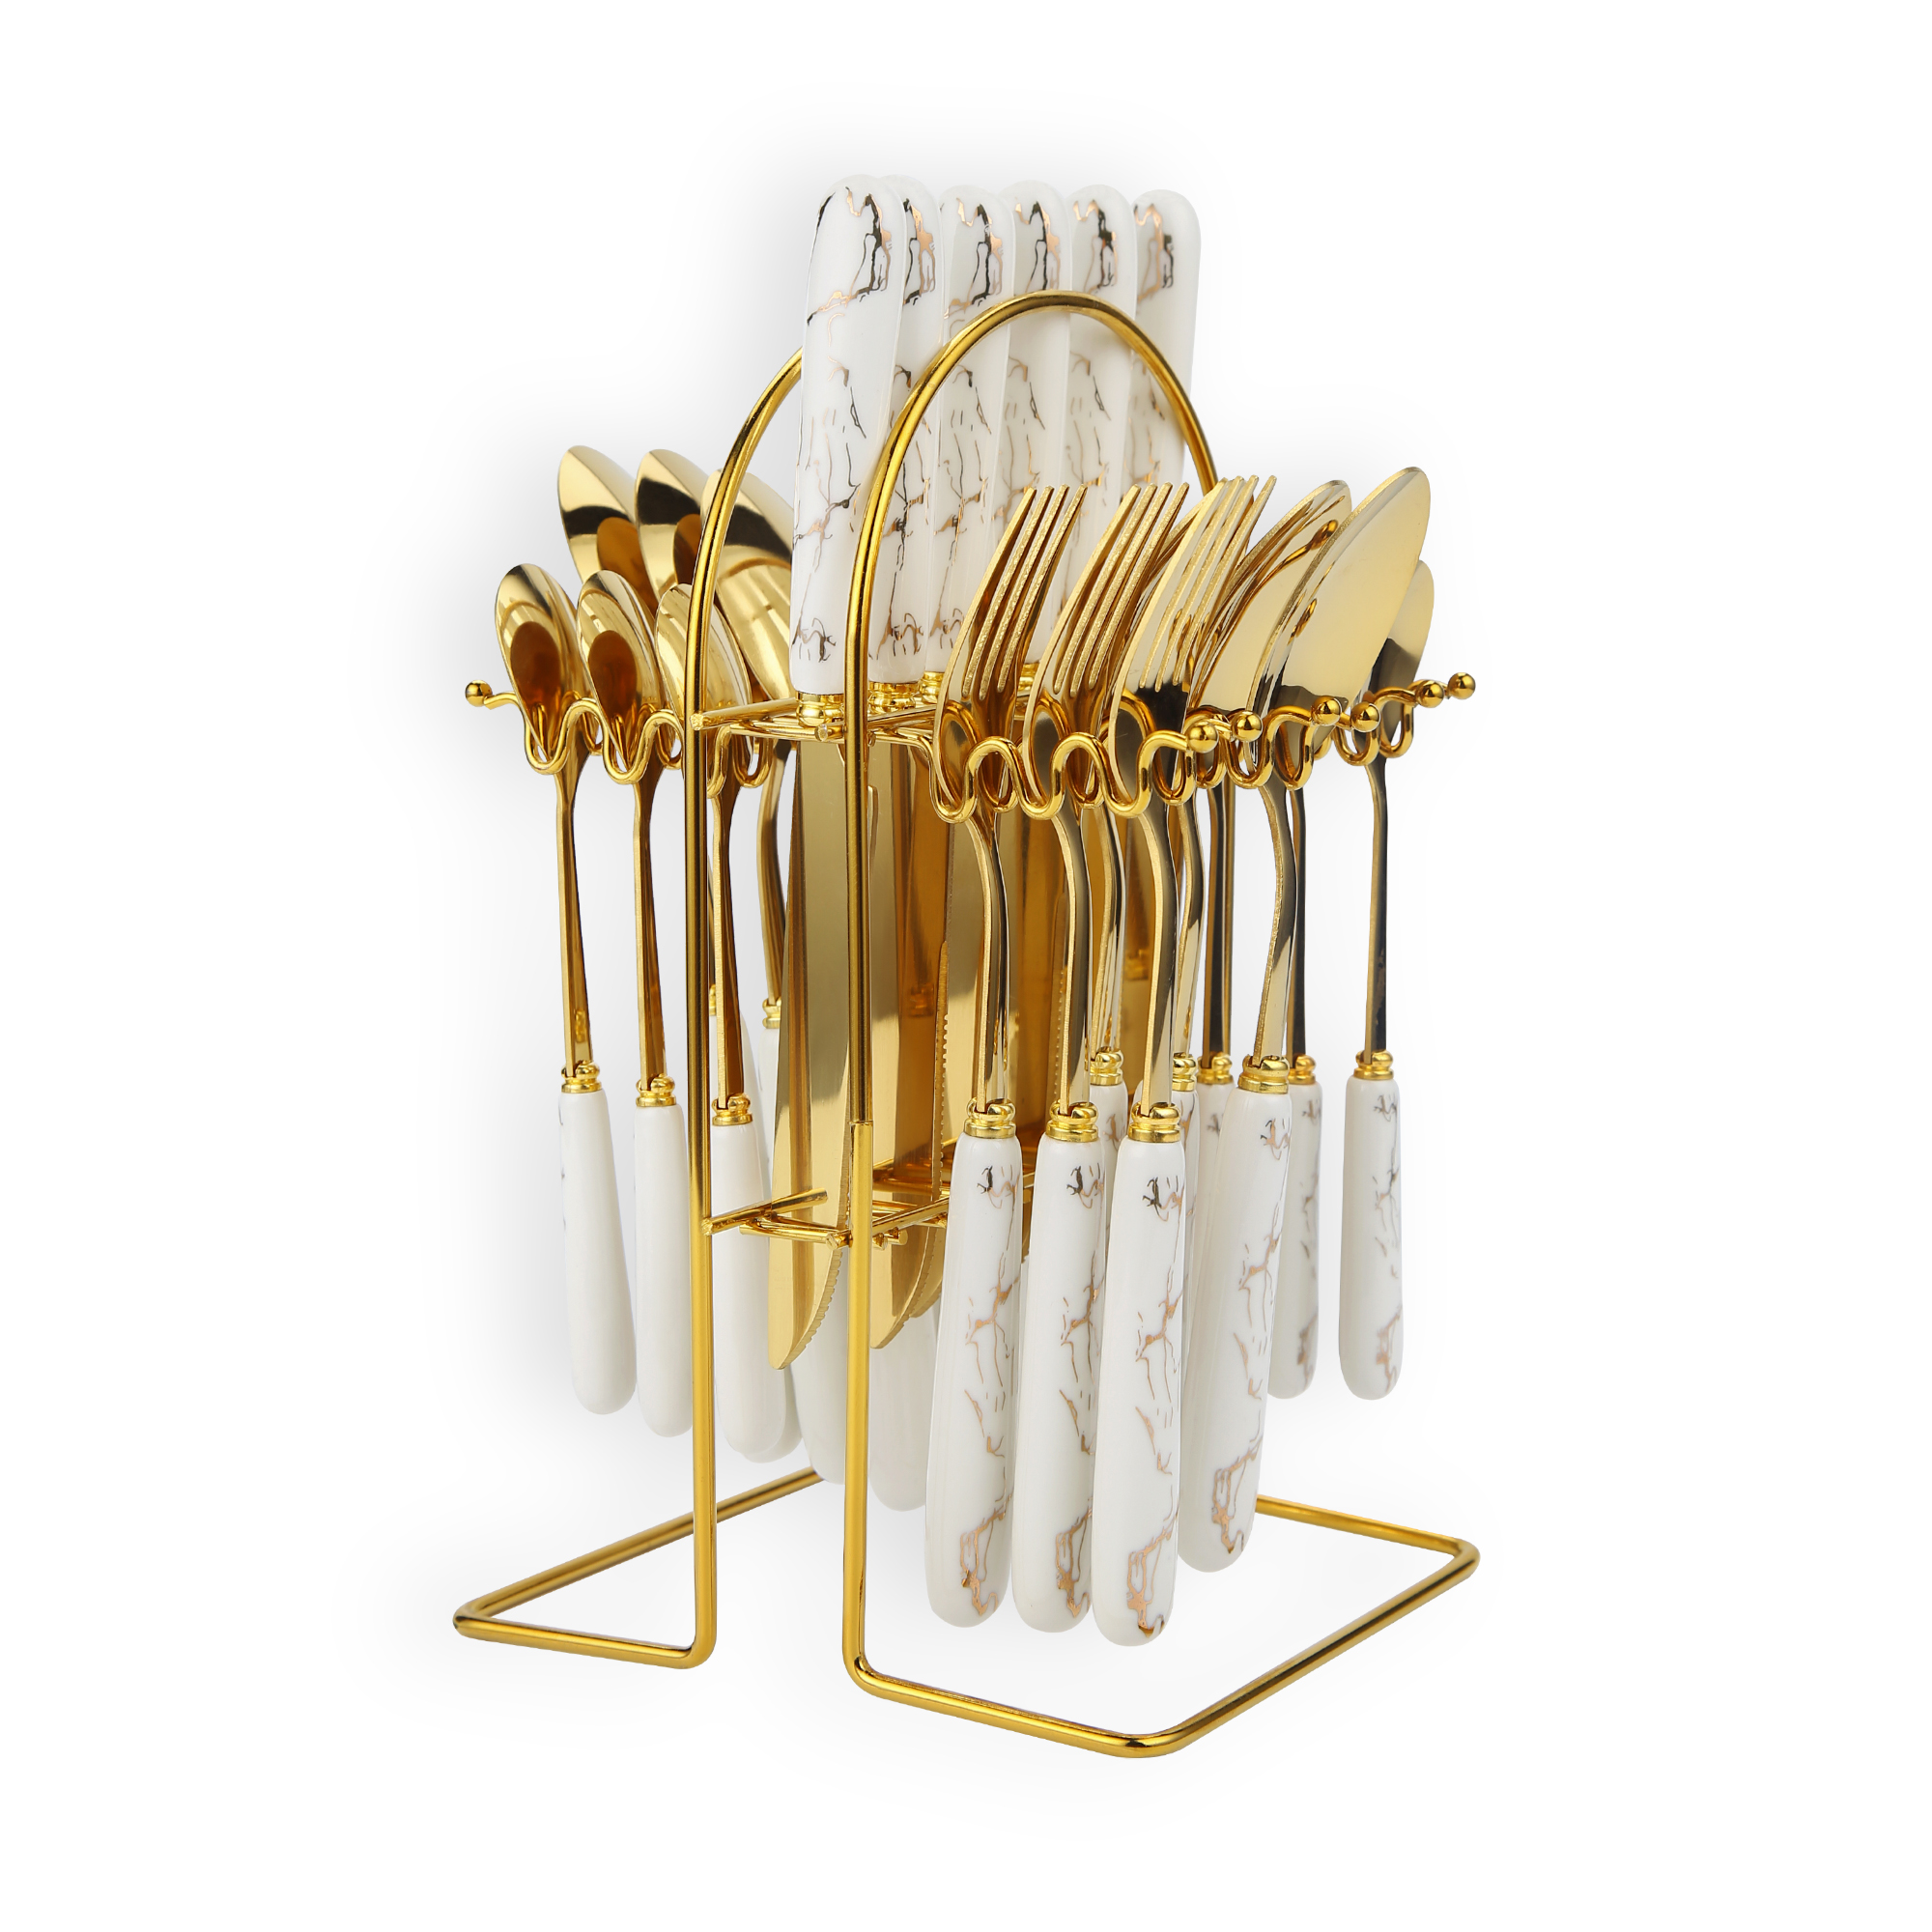 24 قطعة مجموعة أدوات المائدة الفولاذ المقاوم للصدأ ، مع حامل أبيض / ذهبي